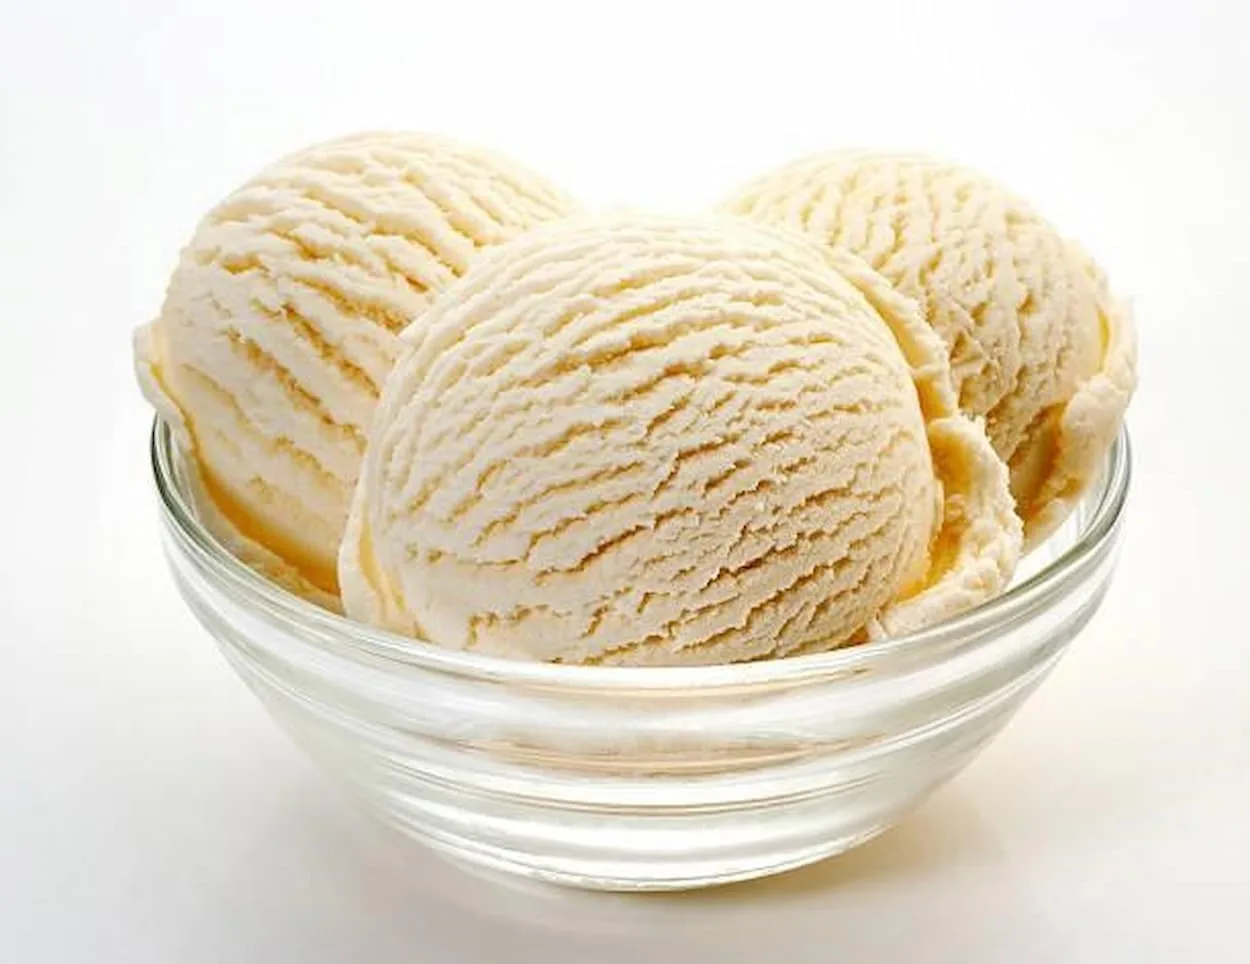  Helado clásico de vainilla VS helado de vainilla en grano - Todas las diferencias